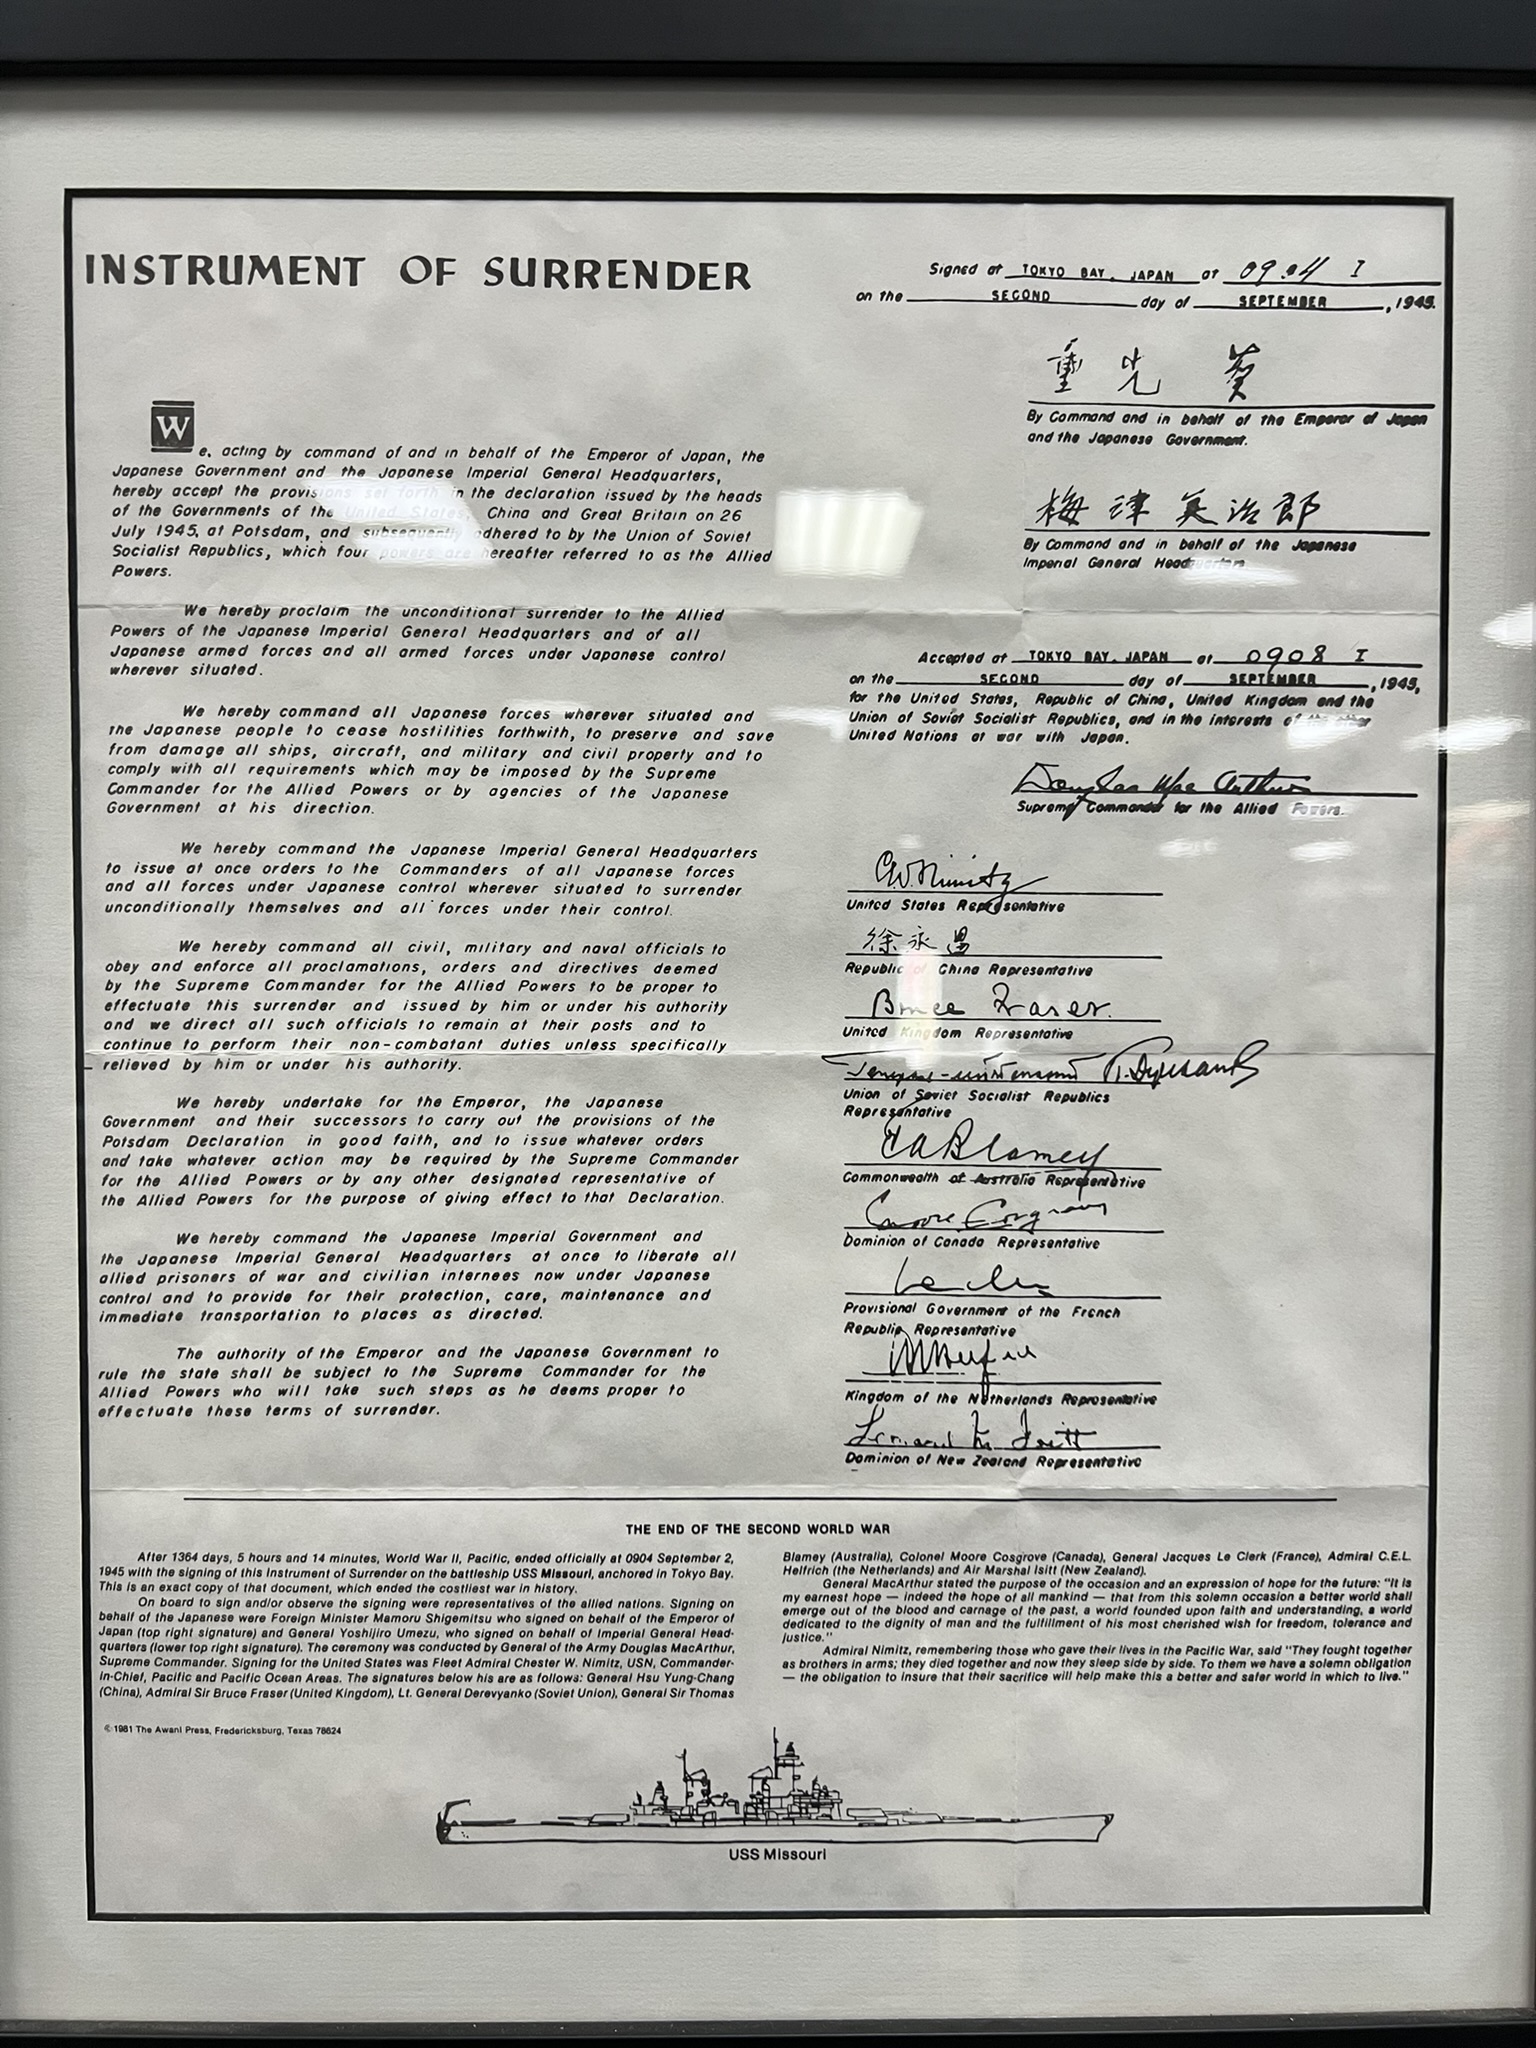 梅津美治郎在 USS Missouri 签署的日本无条件投降的降书